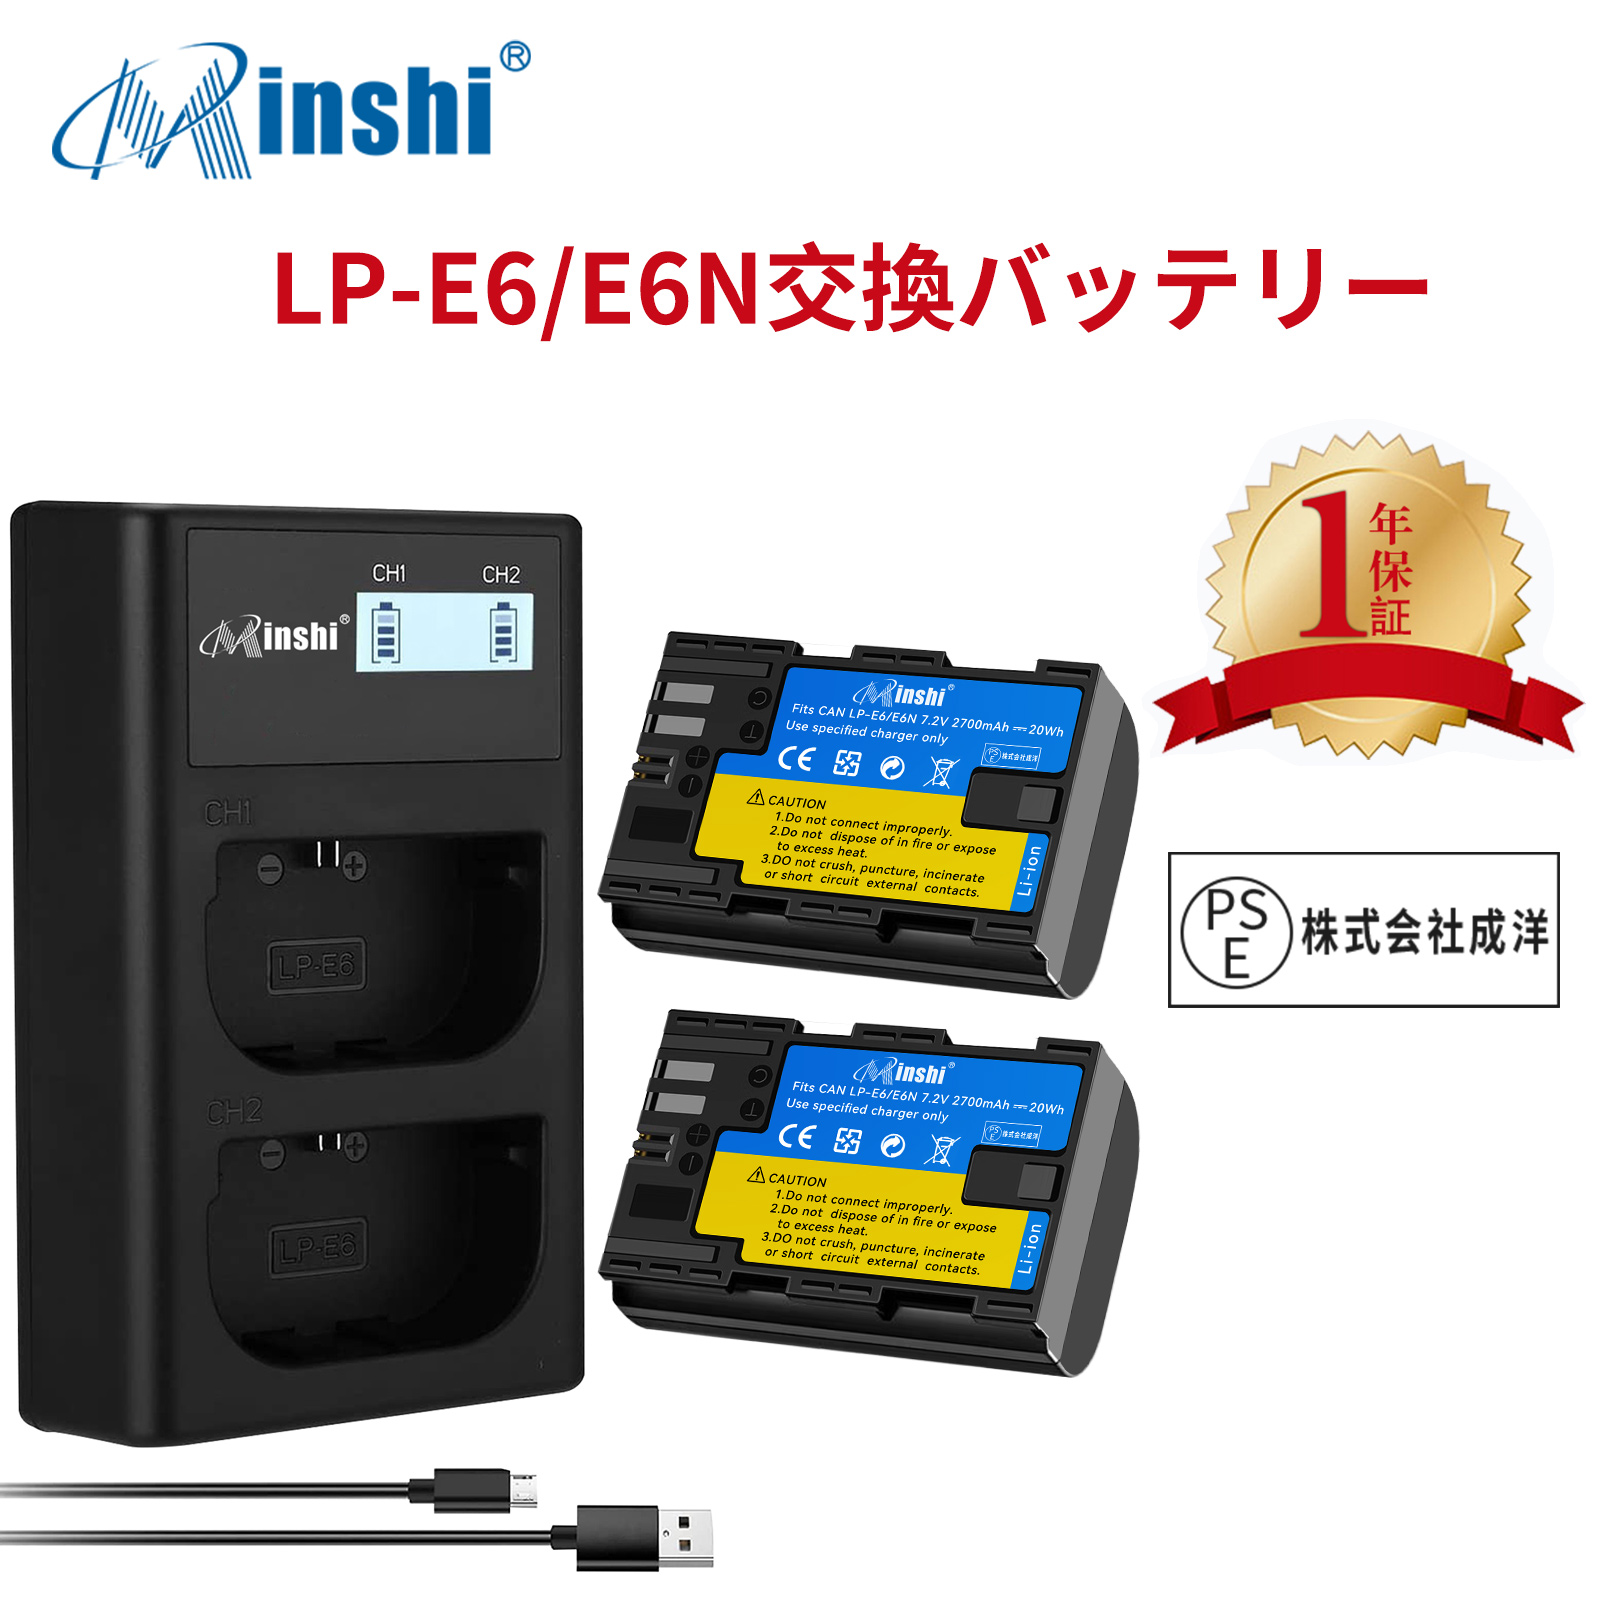 【２個セット】minshi Canon EOS 5D MarkIII LP-E6  LP-E6N EOS6D CANON 80D 【2700mAh 7.2V 】【互換急速USBチャージャー】高品質 LP-E6NH 交換用バッテリー